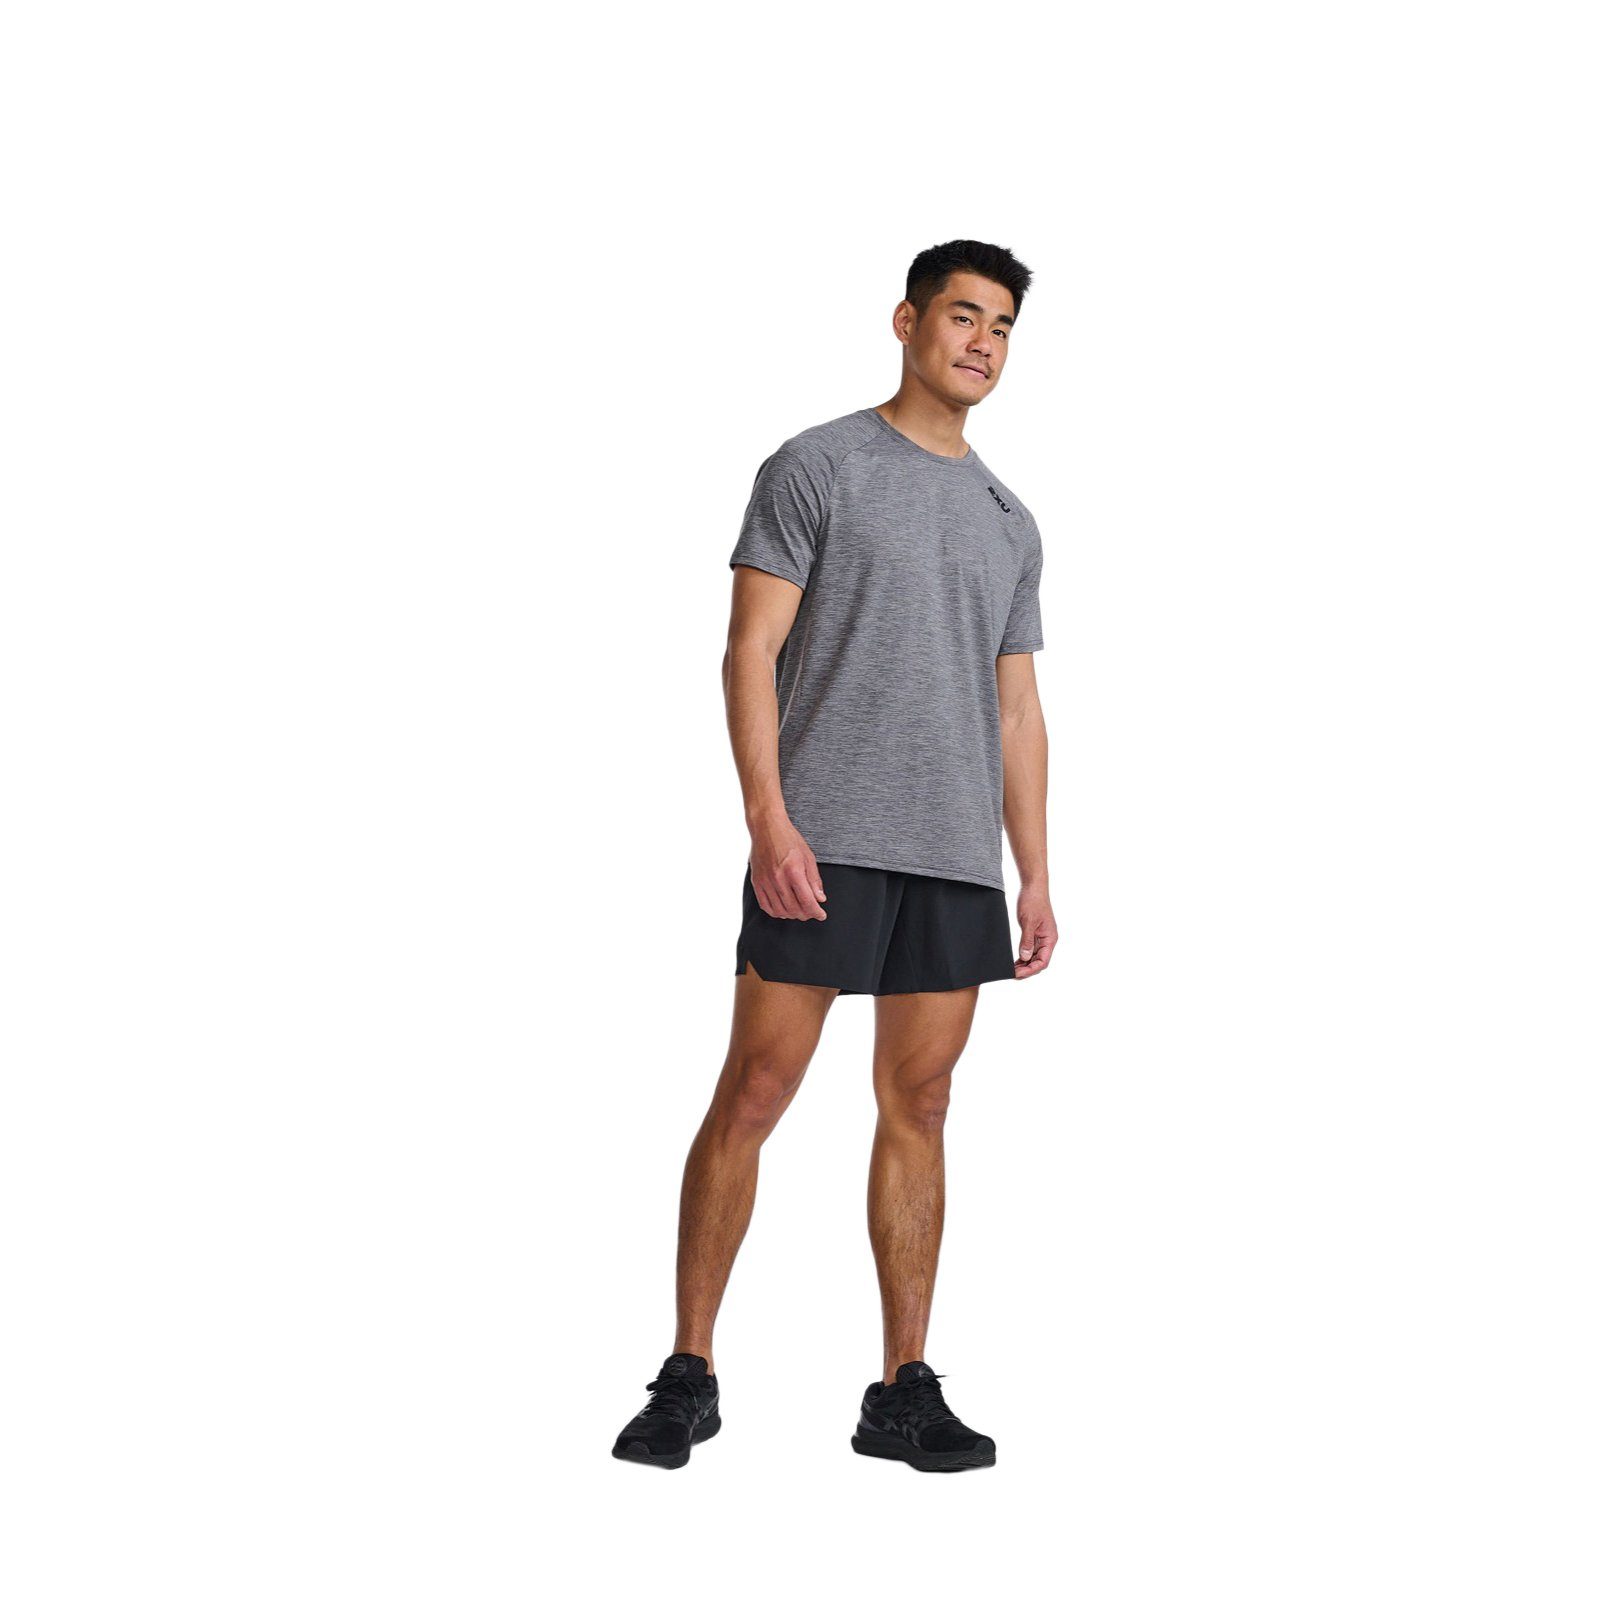 Mist/Black strapazierfähiges 2xU Material Tee Harbor Motion Trainingsshirt und Bewegungsfreiheit Laufshirt